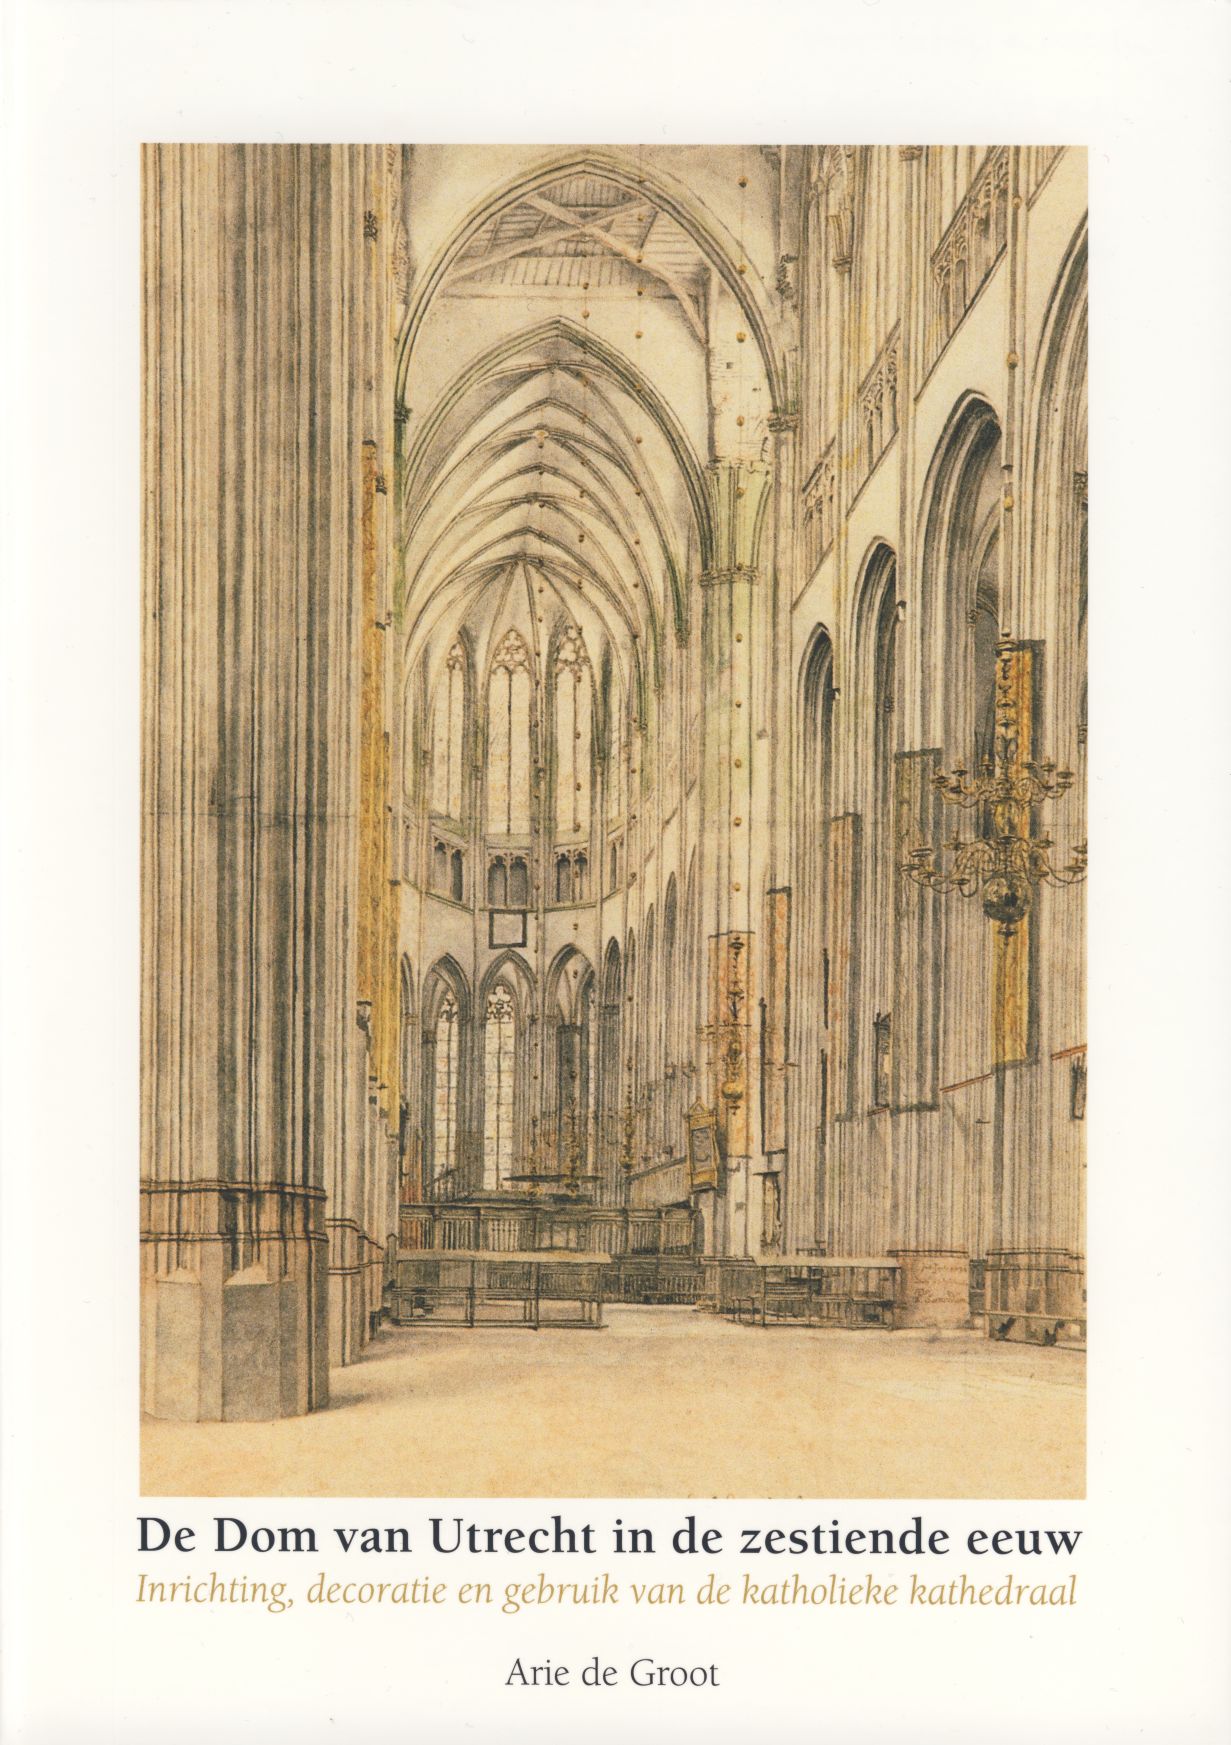 De Dom van Utrecht in de zestiende eeuw